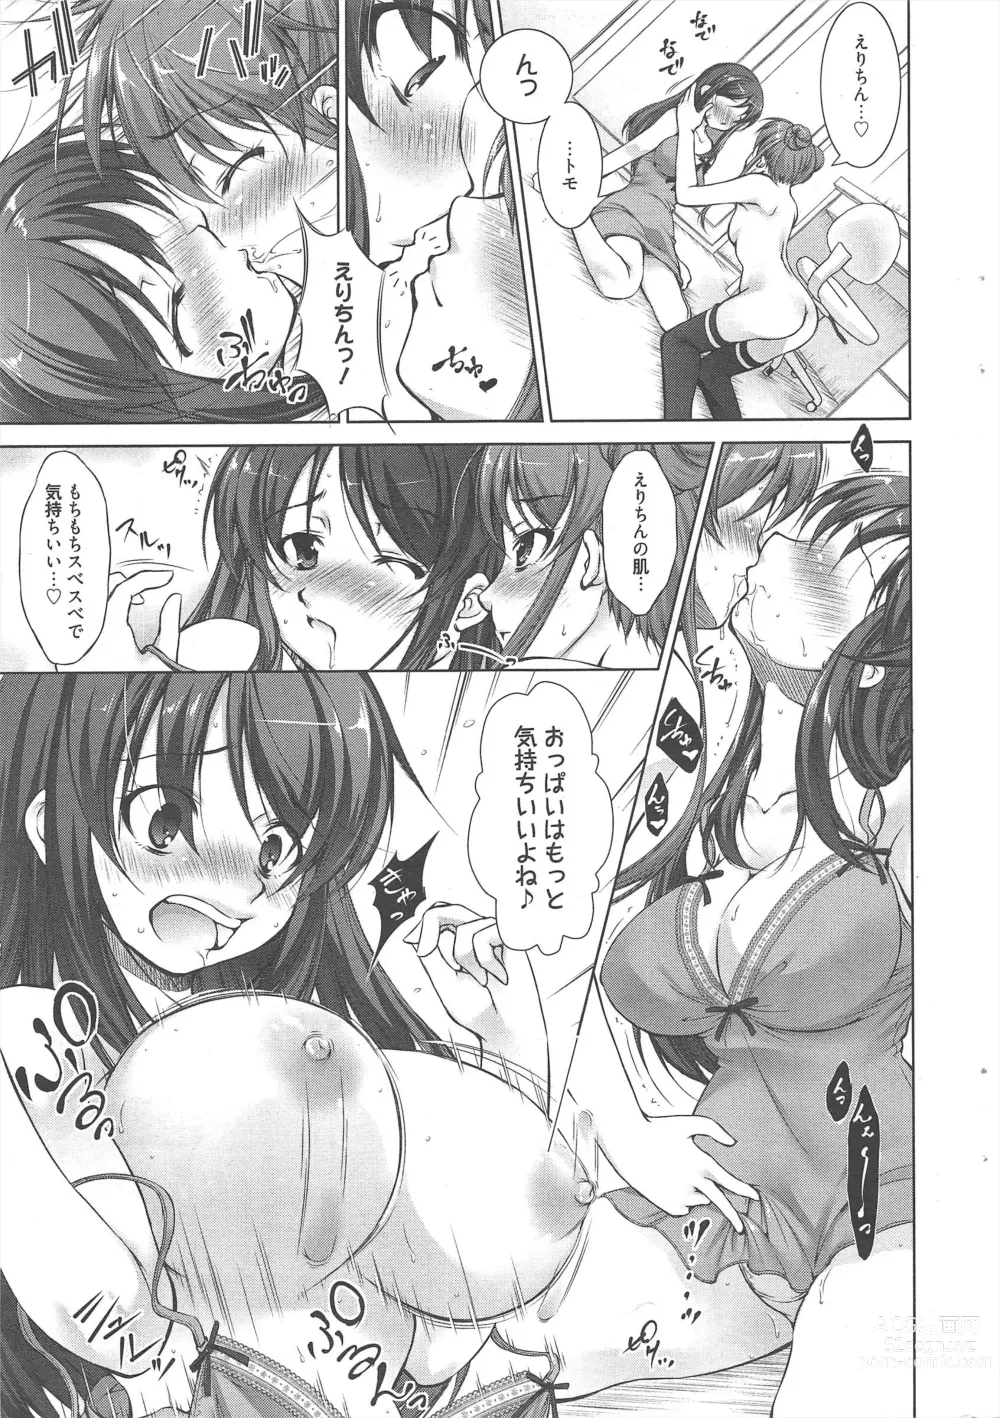 Page 13 of manga Manga Bangaichi 2013-01